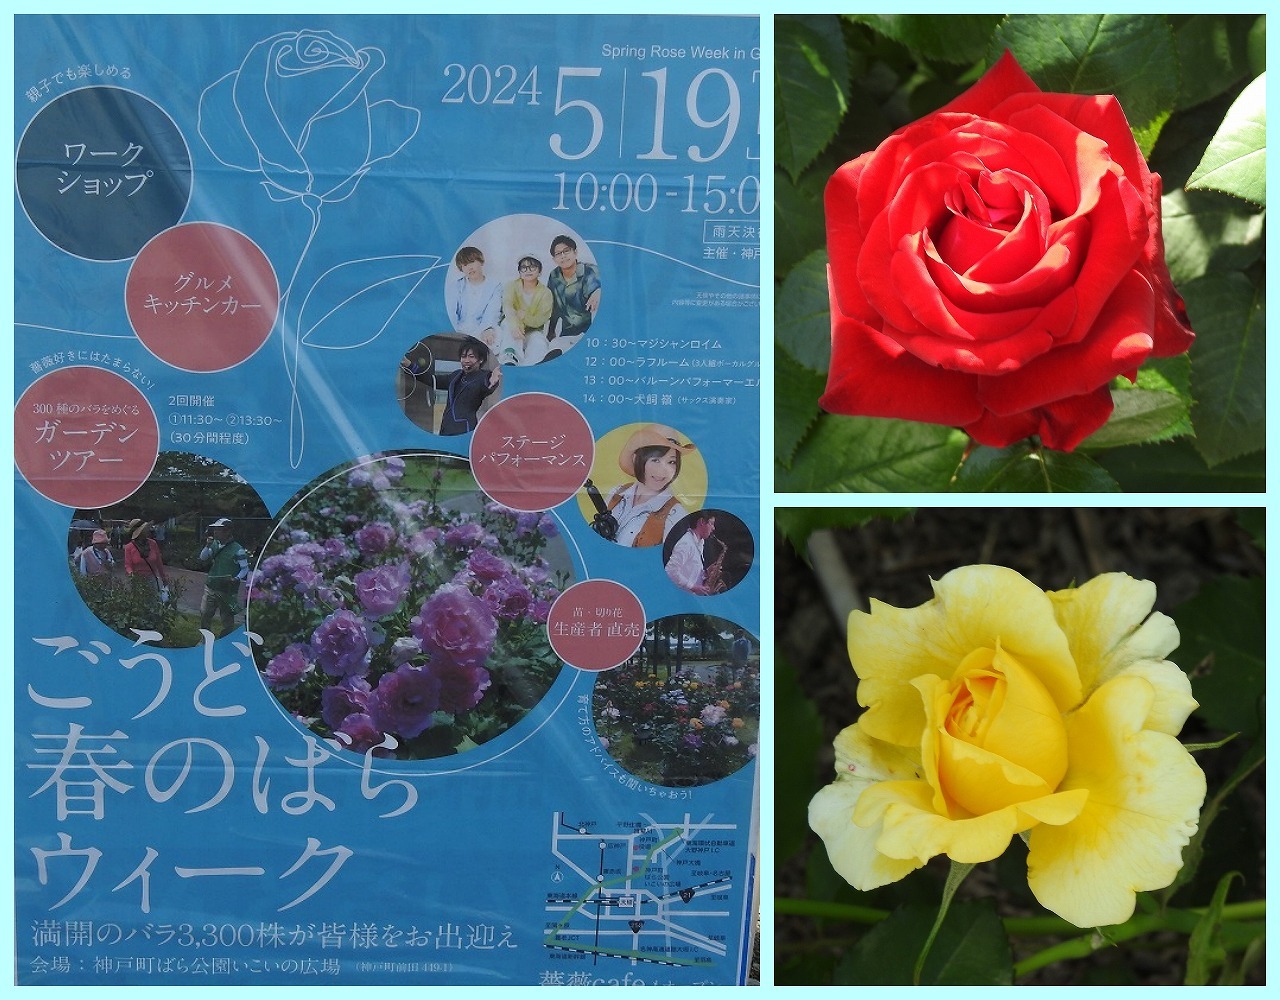 『神戸町ばら公園いこいの広場のバラ達』 - 自然風の自然風だより